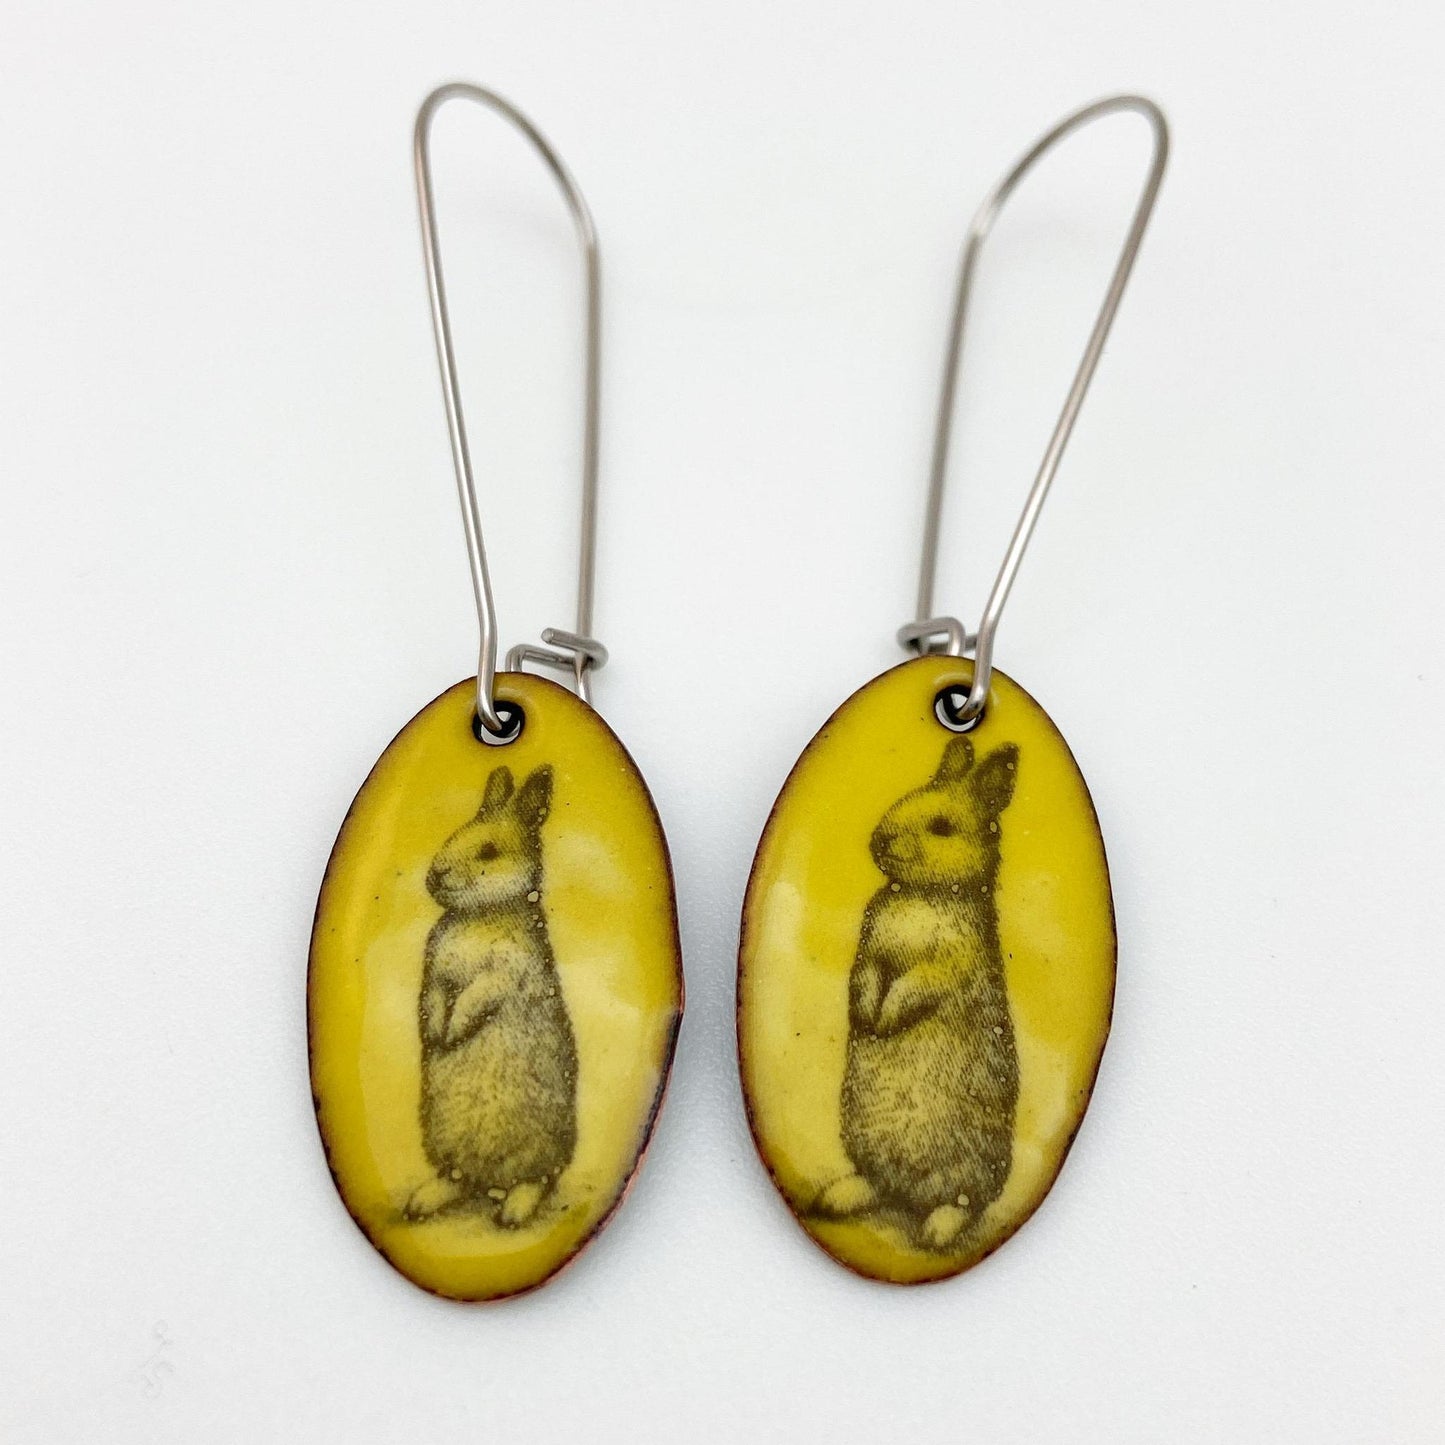 Earrings - Happy Bunnies - Yellow Oval - Enamel on Copper